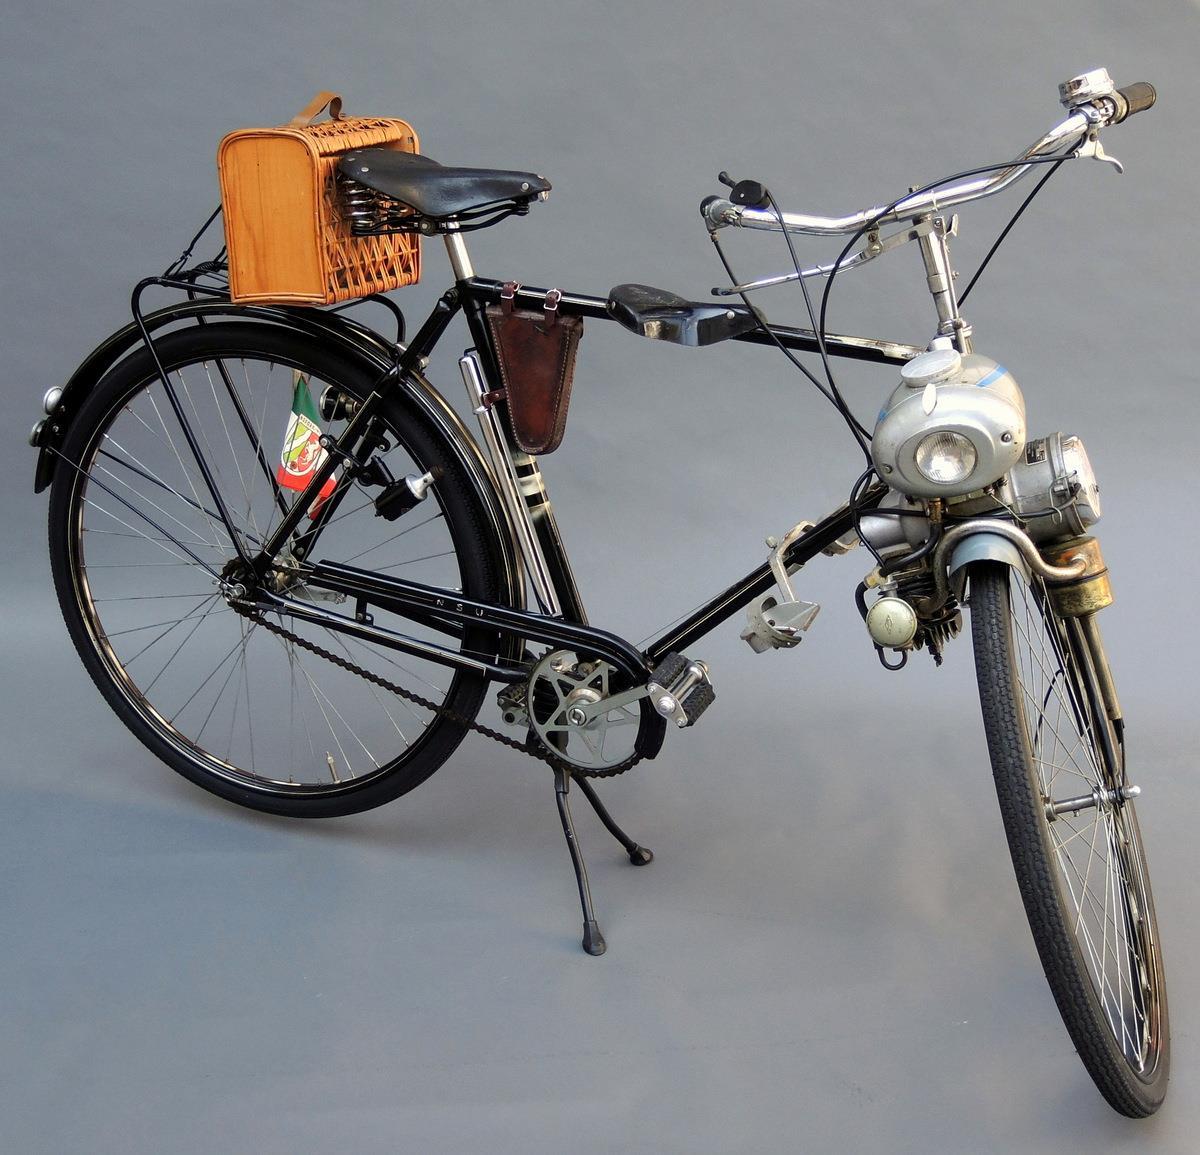 NSU Fahrrad "Eilenriede" mit Hilfsmotor aus dem Jahr 1952